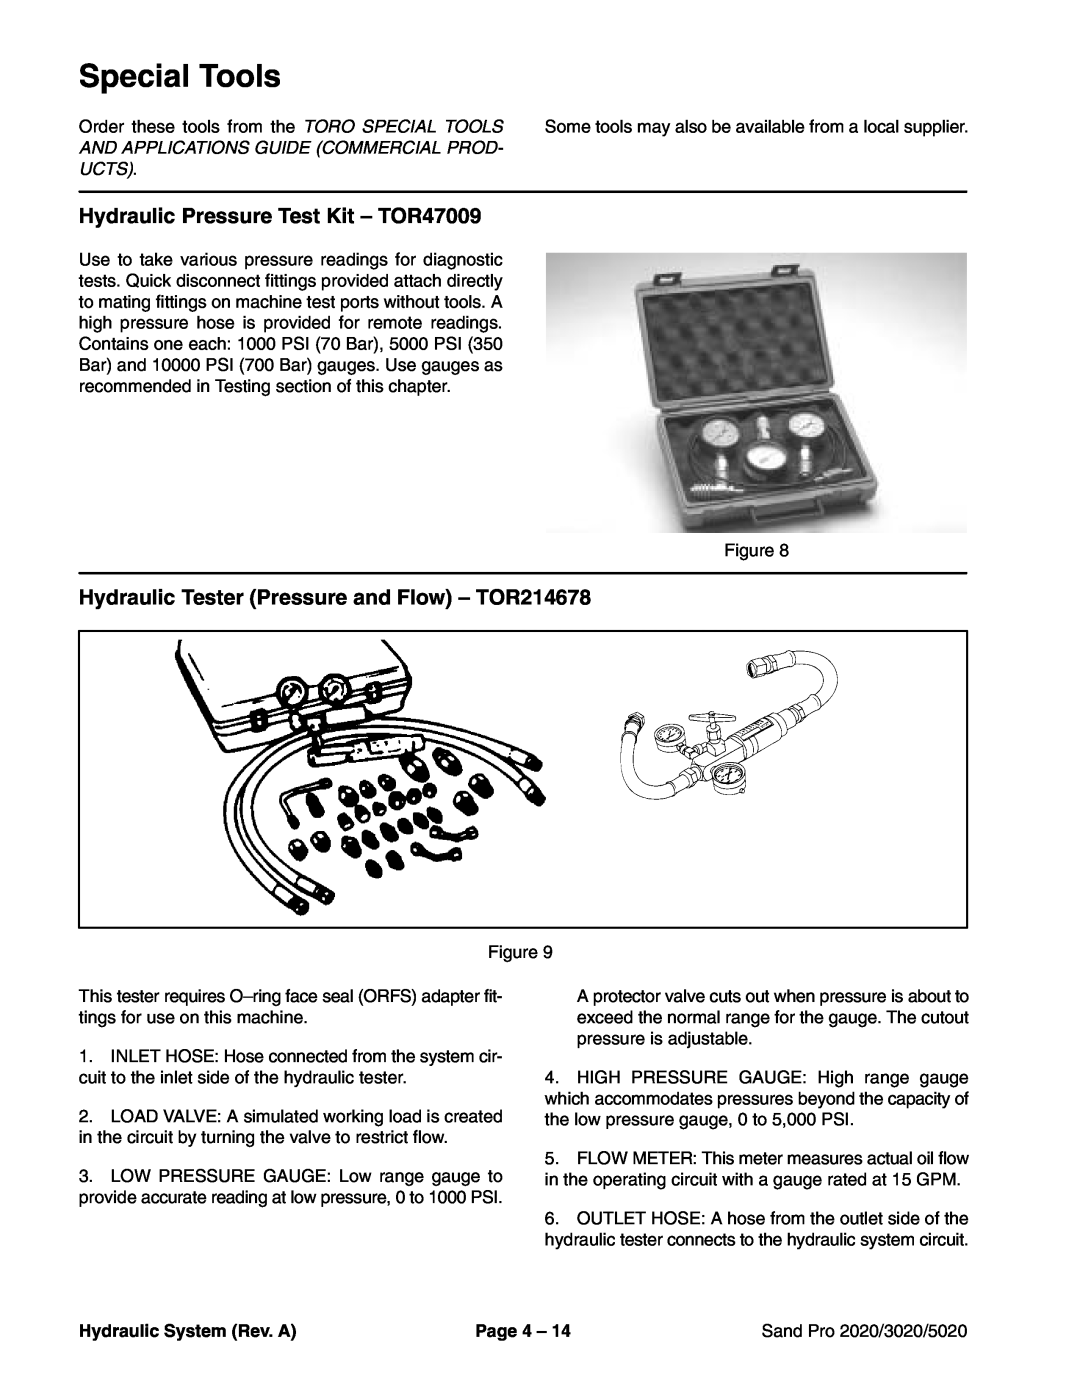 Toro 2020 Special Tools, Hydraulic Pressure Test Kit - TOR47009, Hydraulic Tester Pressure and Flow - TOR214678, Page 4 